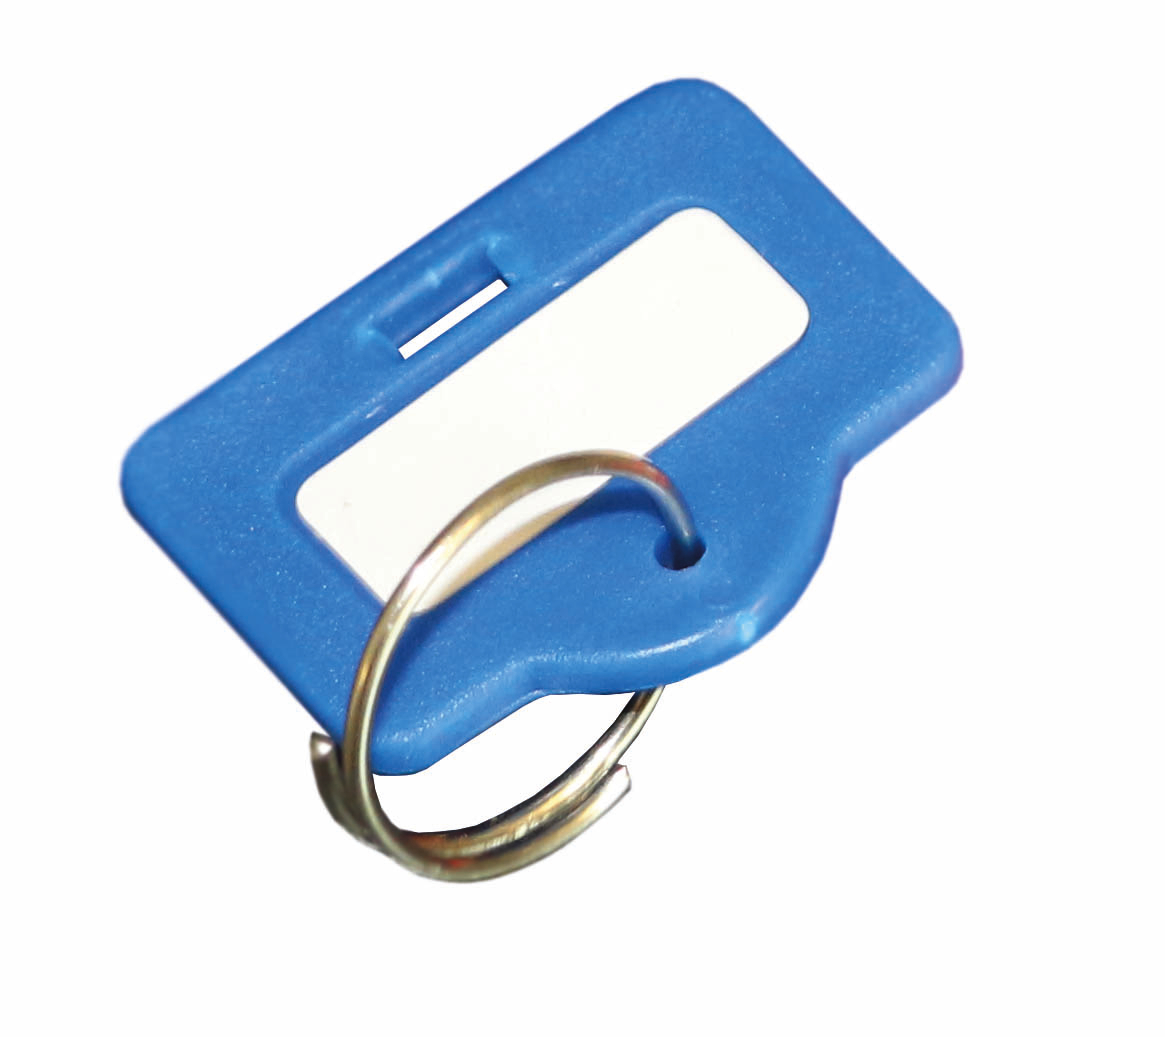 Sleutelhanger voor sleutelkast, blauw  ZOOM